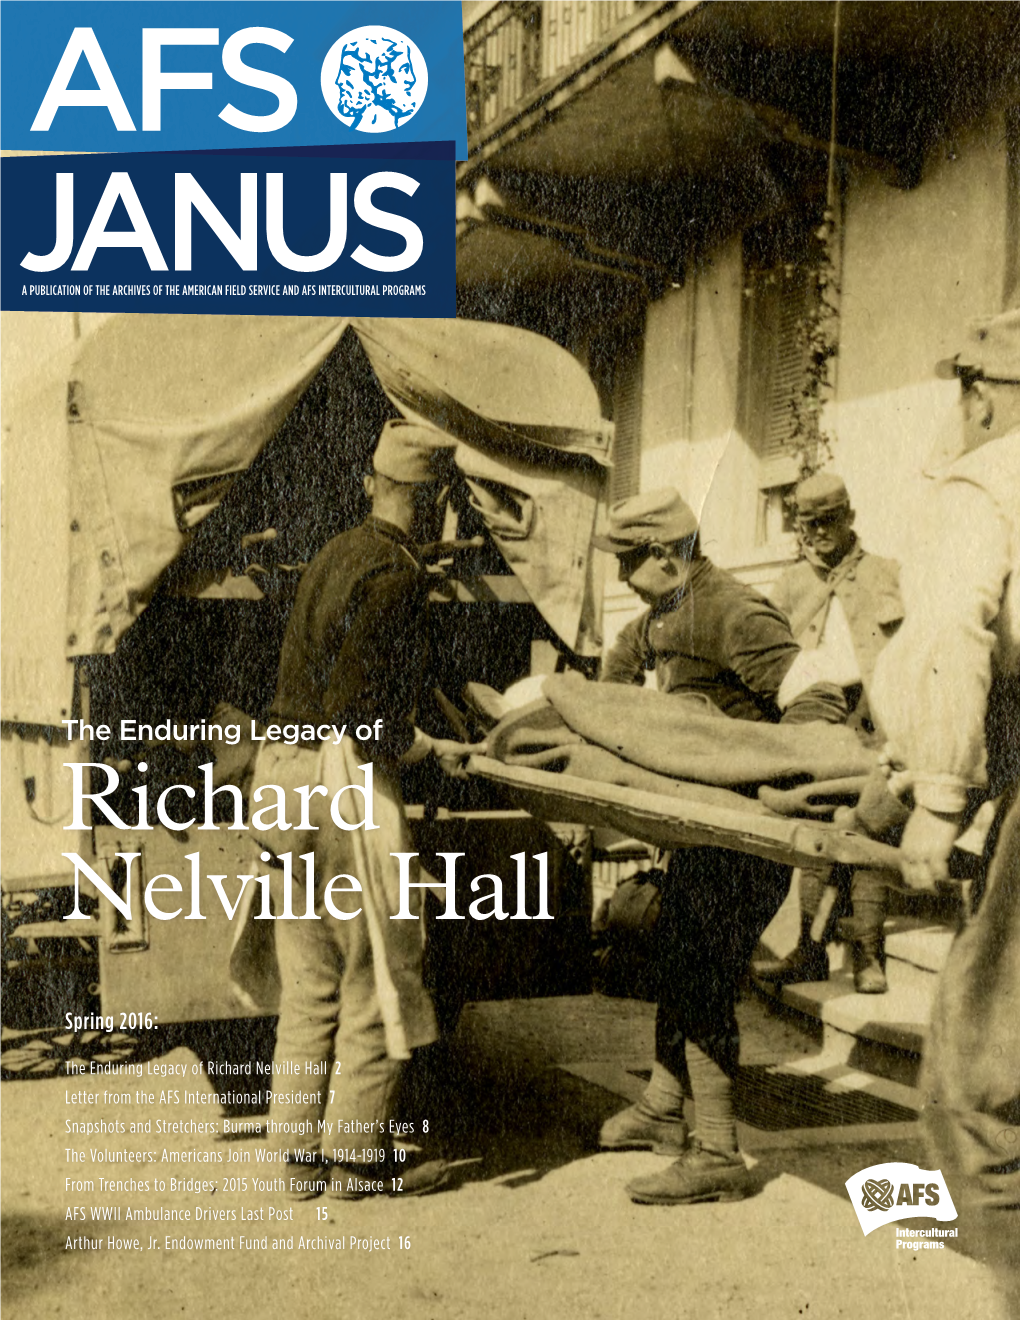 Richard Nelville Hall